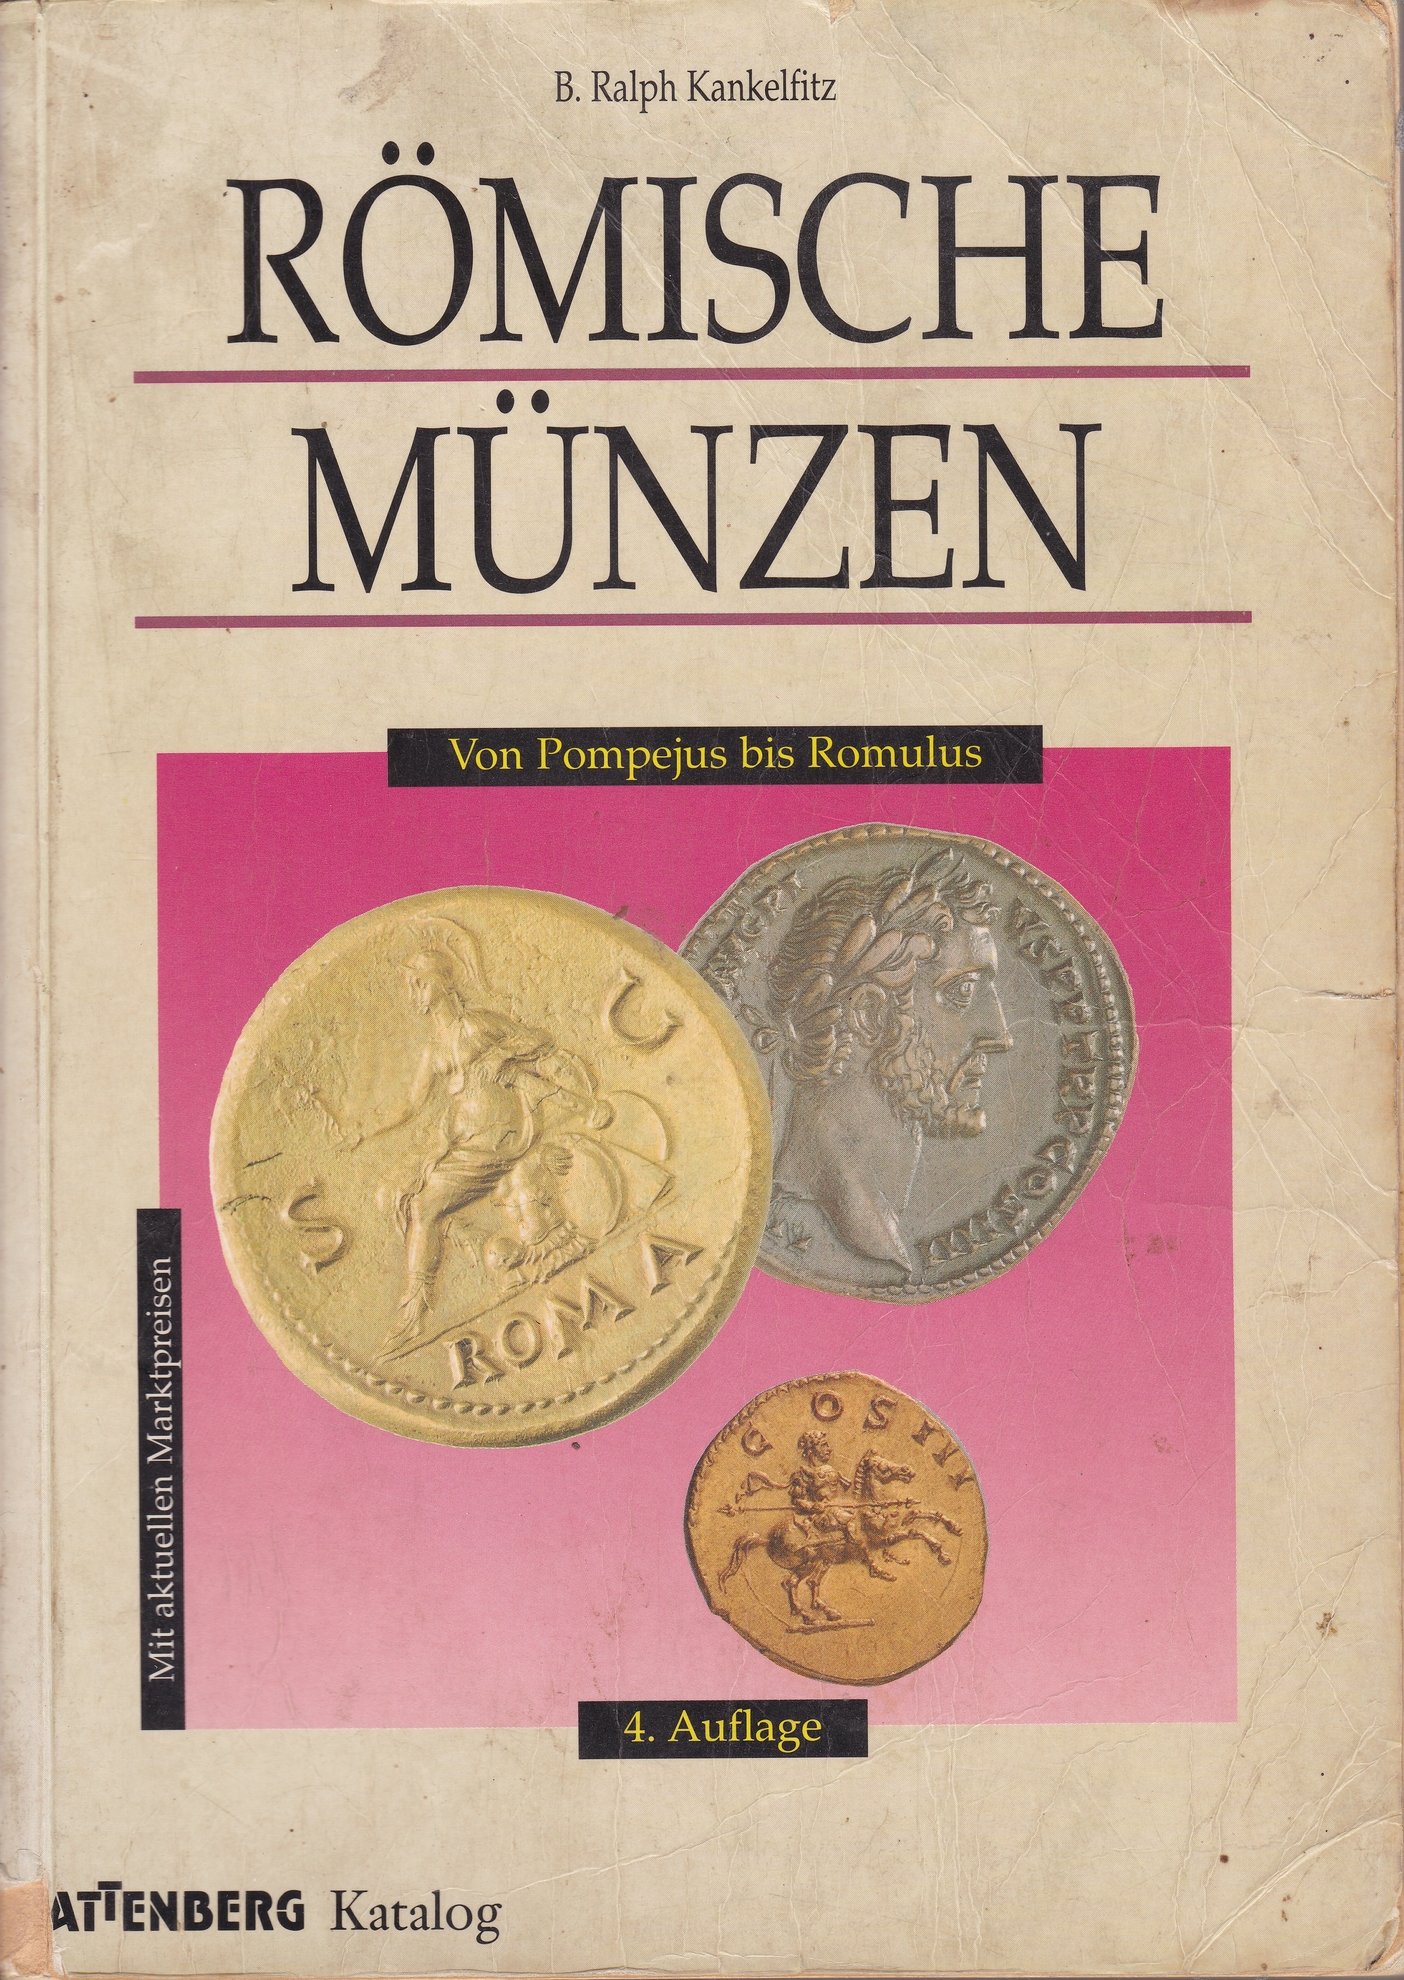 B. Ralph Kankelfitz: Römische Münzen. Von Pompejus bis Romulus (Rippl-Rónai Múzeum CC BY-NC-ND)